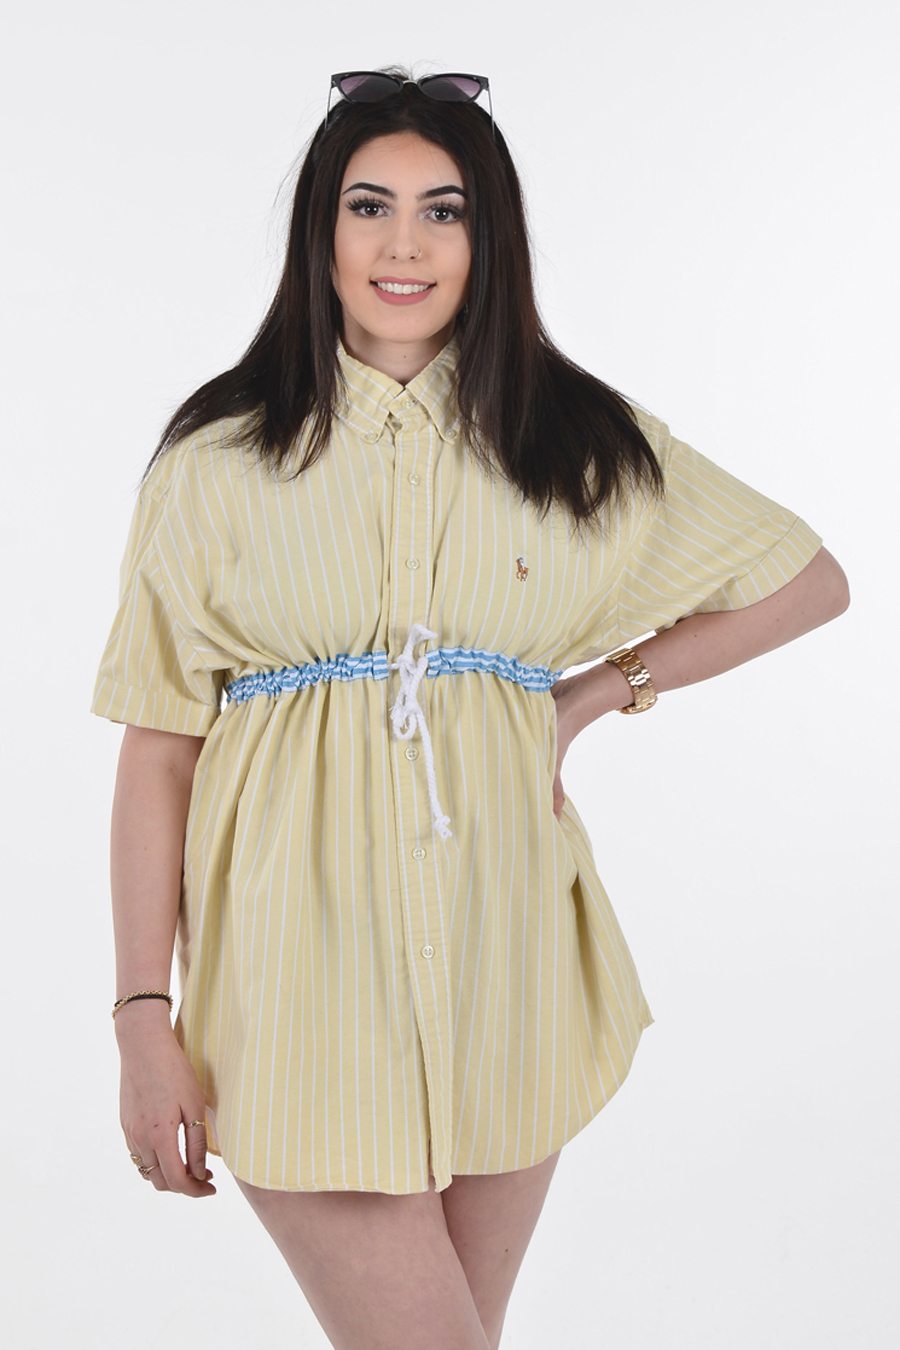 ralph lauren shirt dress vintage